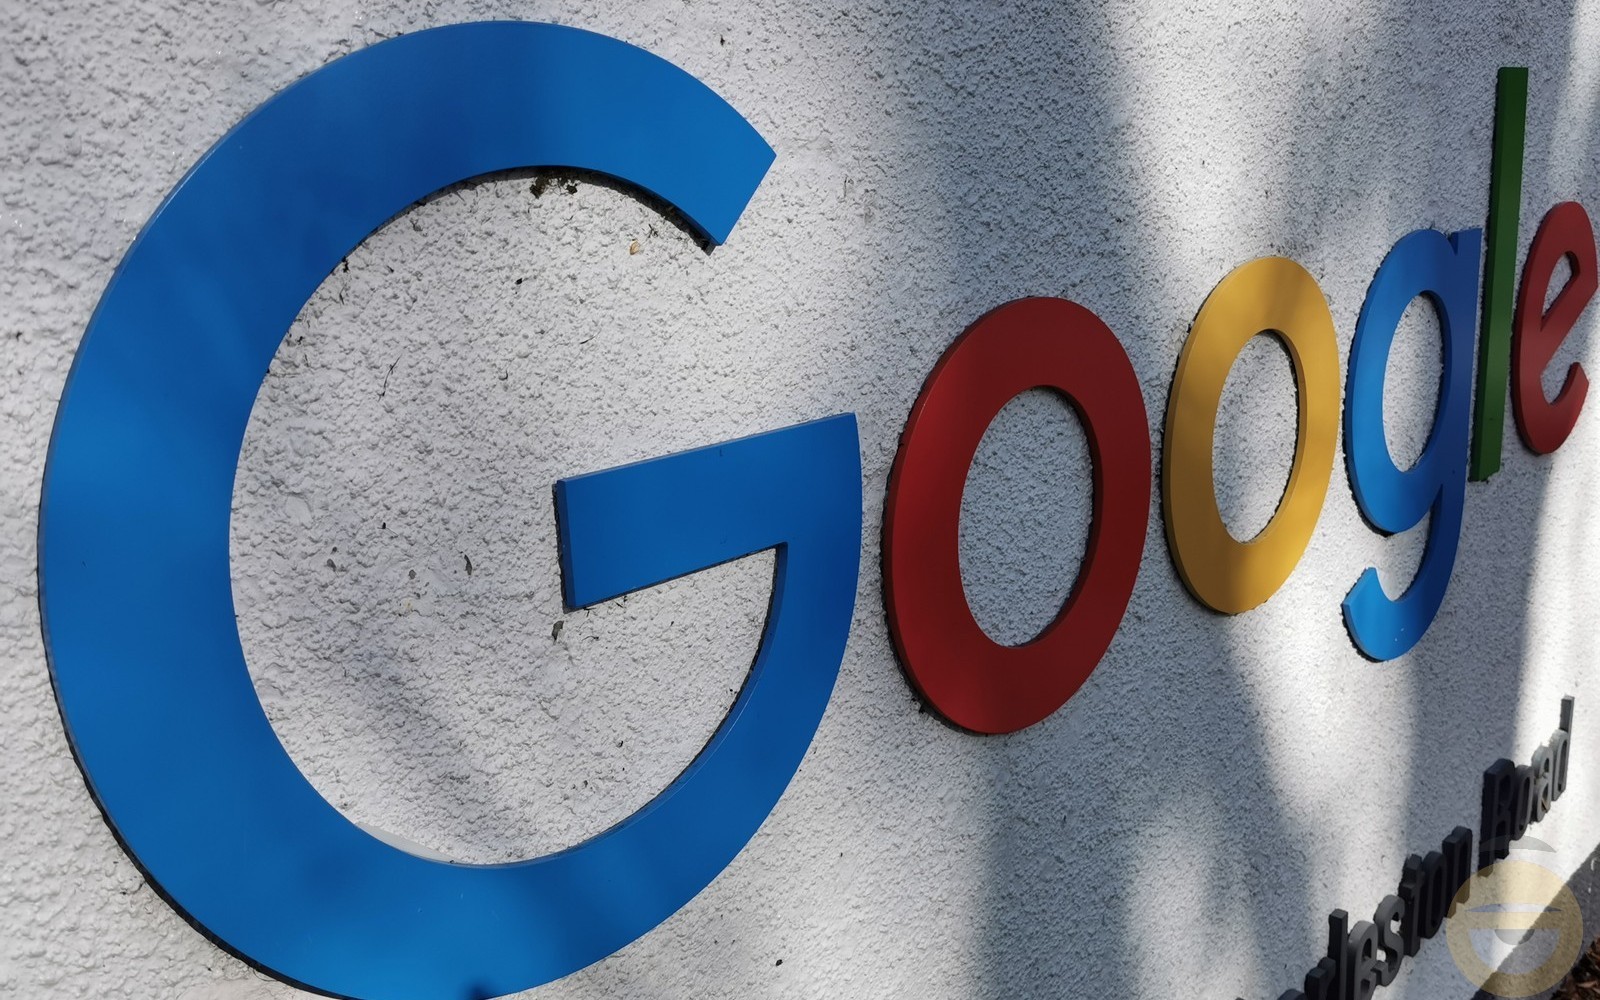 Η παρουσίαση της Google στις 8 Φεβρουαρίου θα επικεντρωθεί στην αναζήτηση, στους χάρτες "και όχι μόνο"